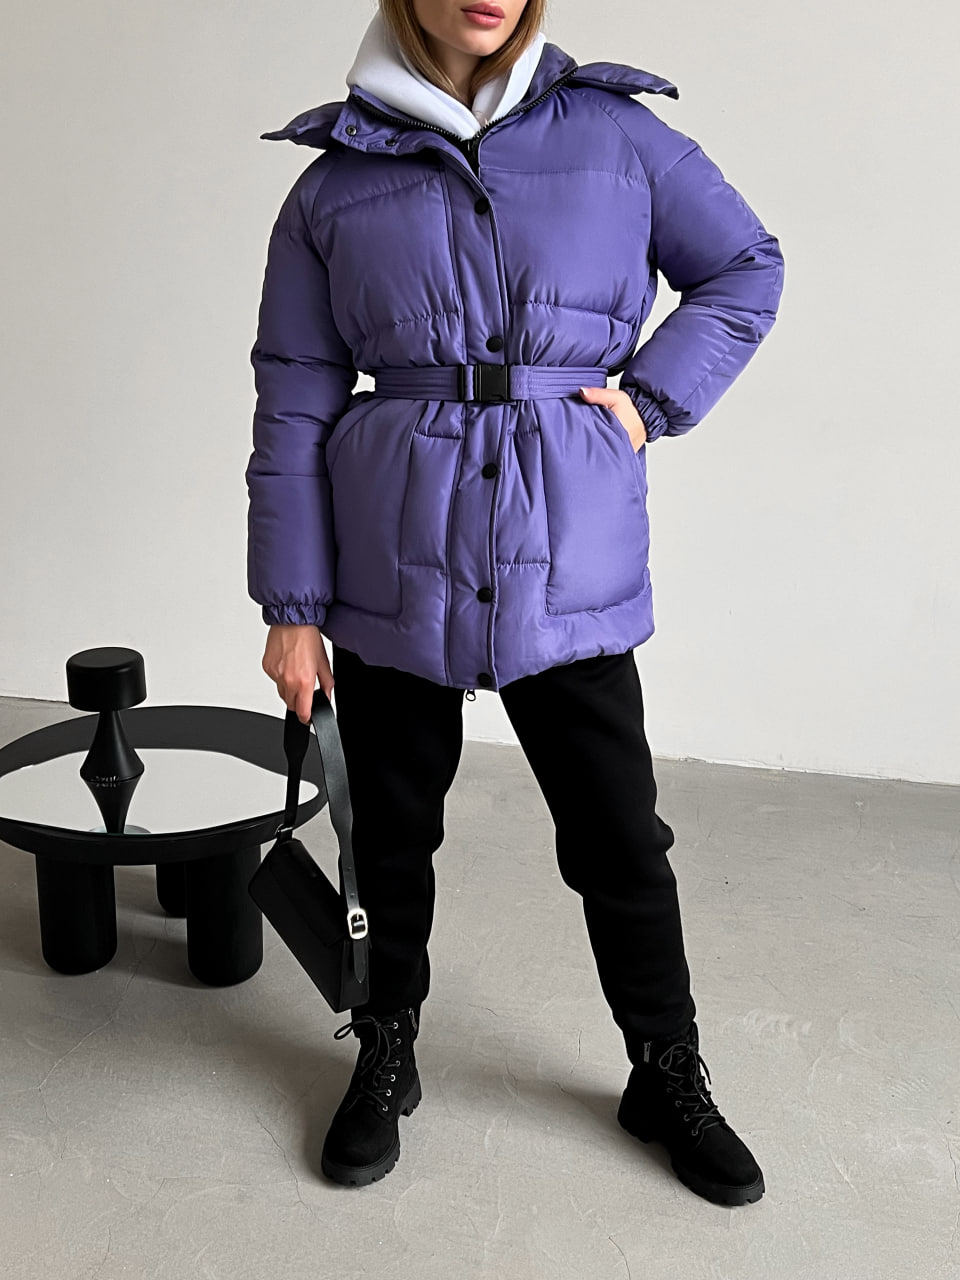 Женская зимняя куртка-пуховик Reload Elly фиолетовая / Зимний короткий пуховик оверсайз стильный теплый - Фото 4